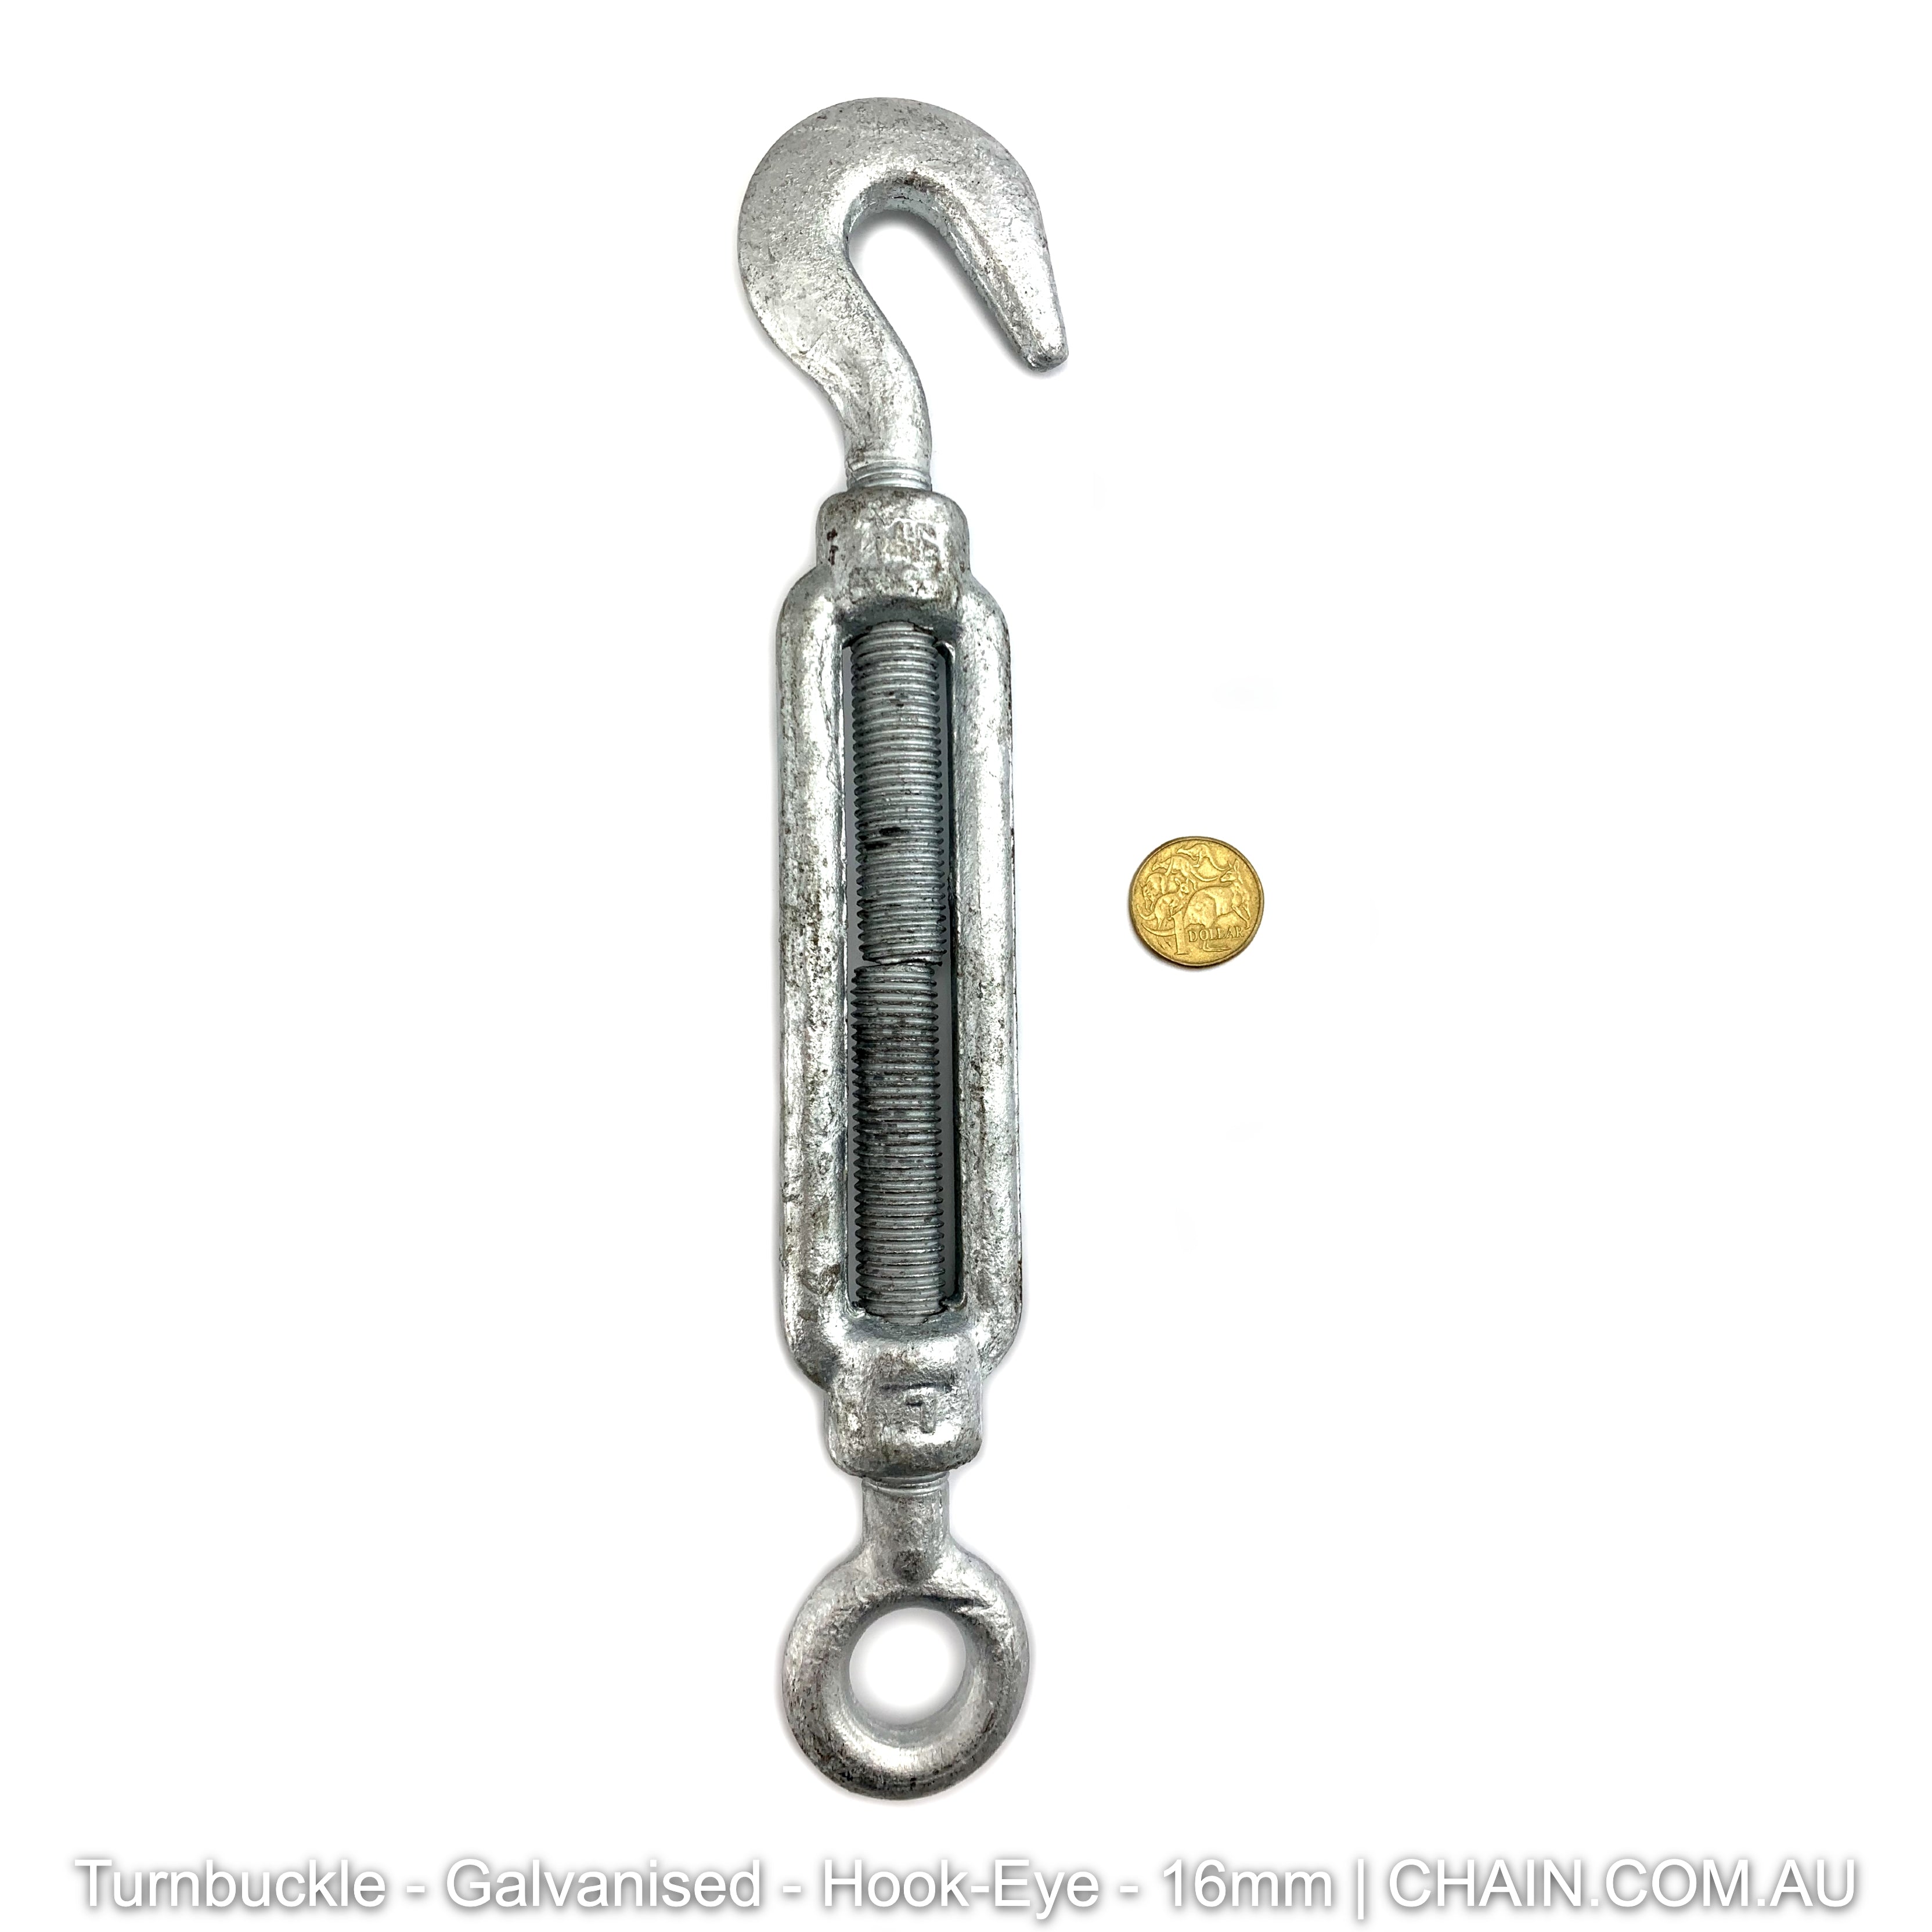 Turnbuckles - Galvanised - Hook-Eye - 16mm. Australia